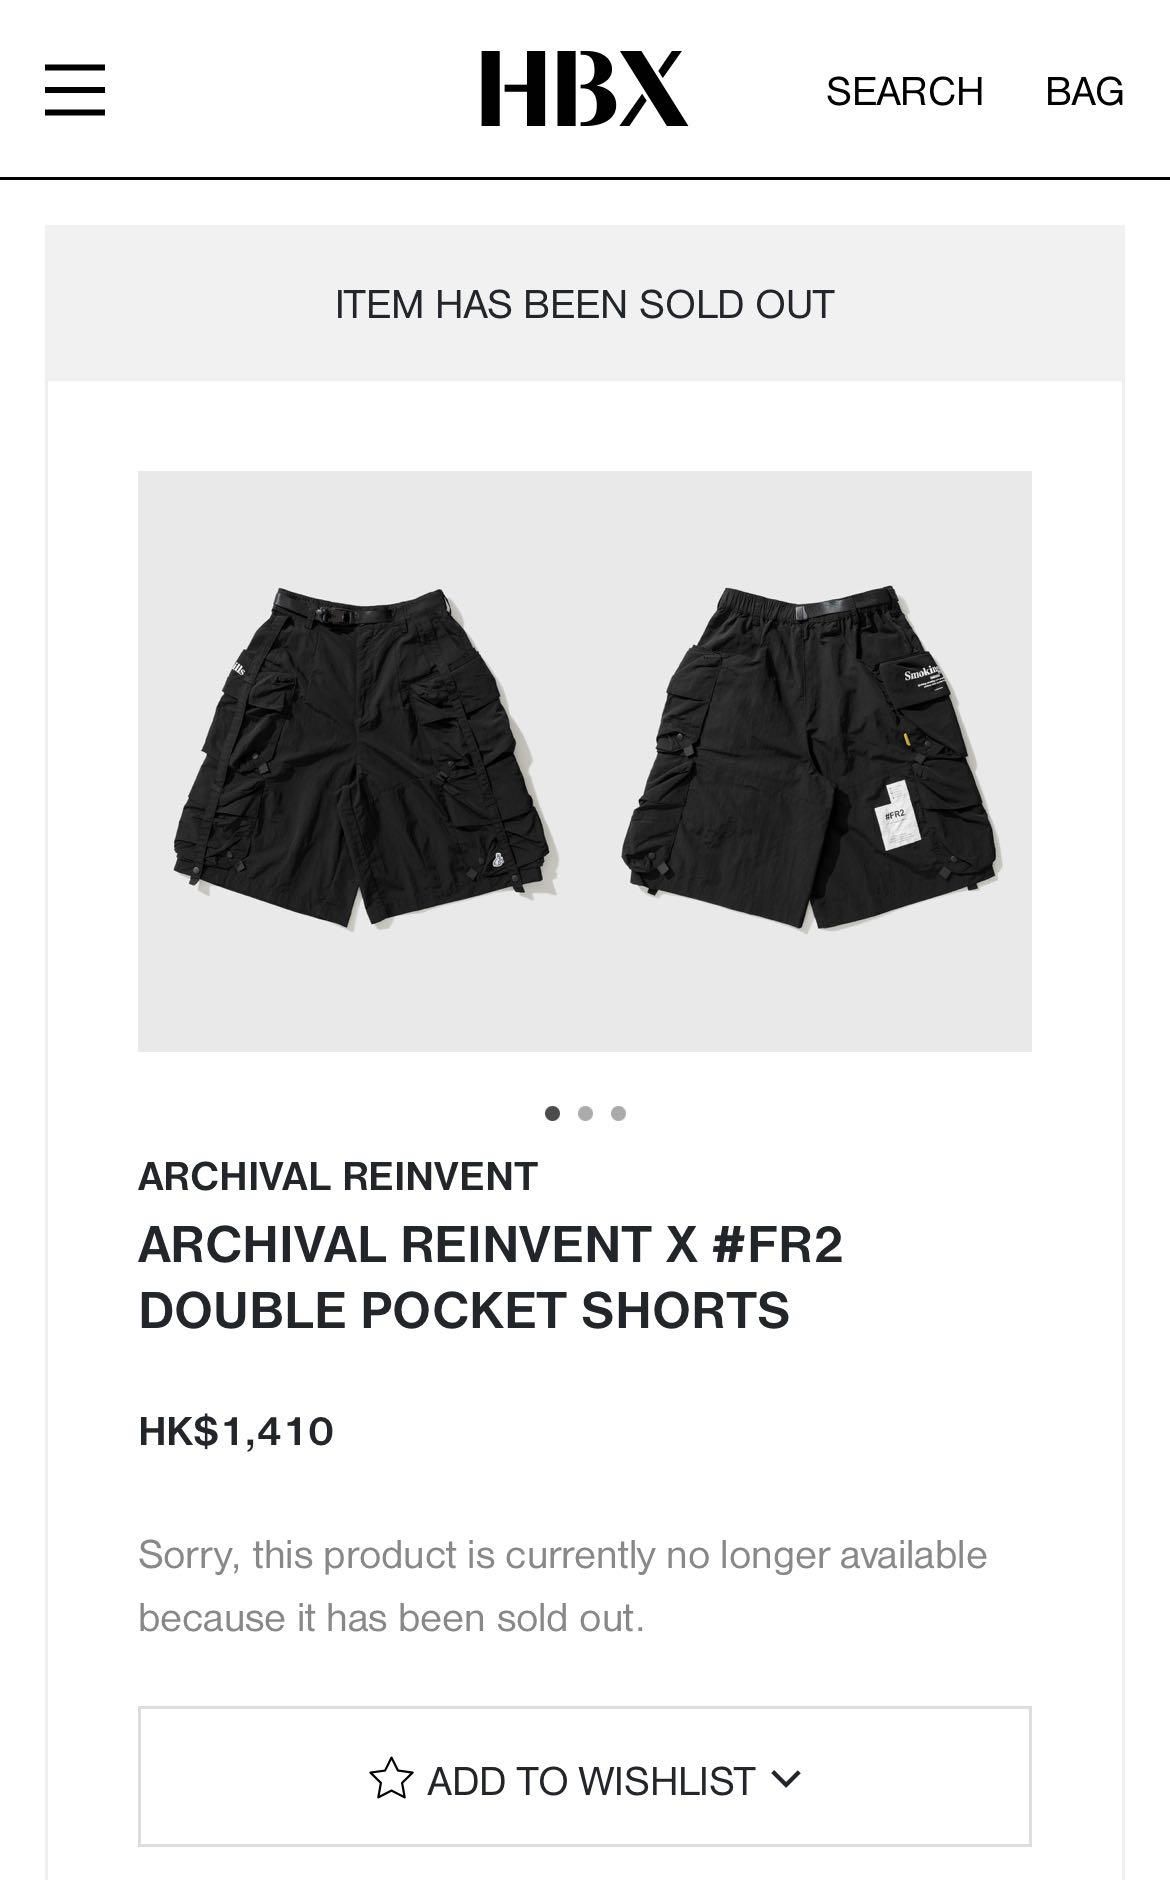 ARCHIVAL REINVENT X #FR2 ダブル ポケット パンツ - ショートパンツ